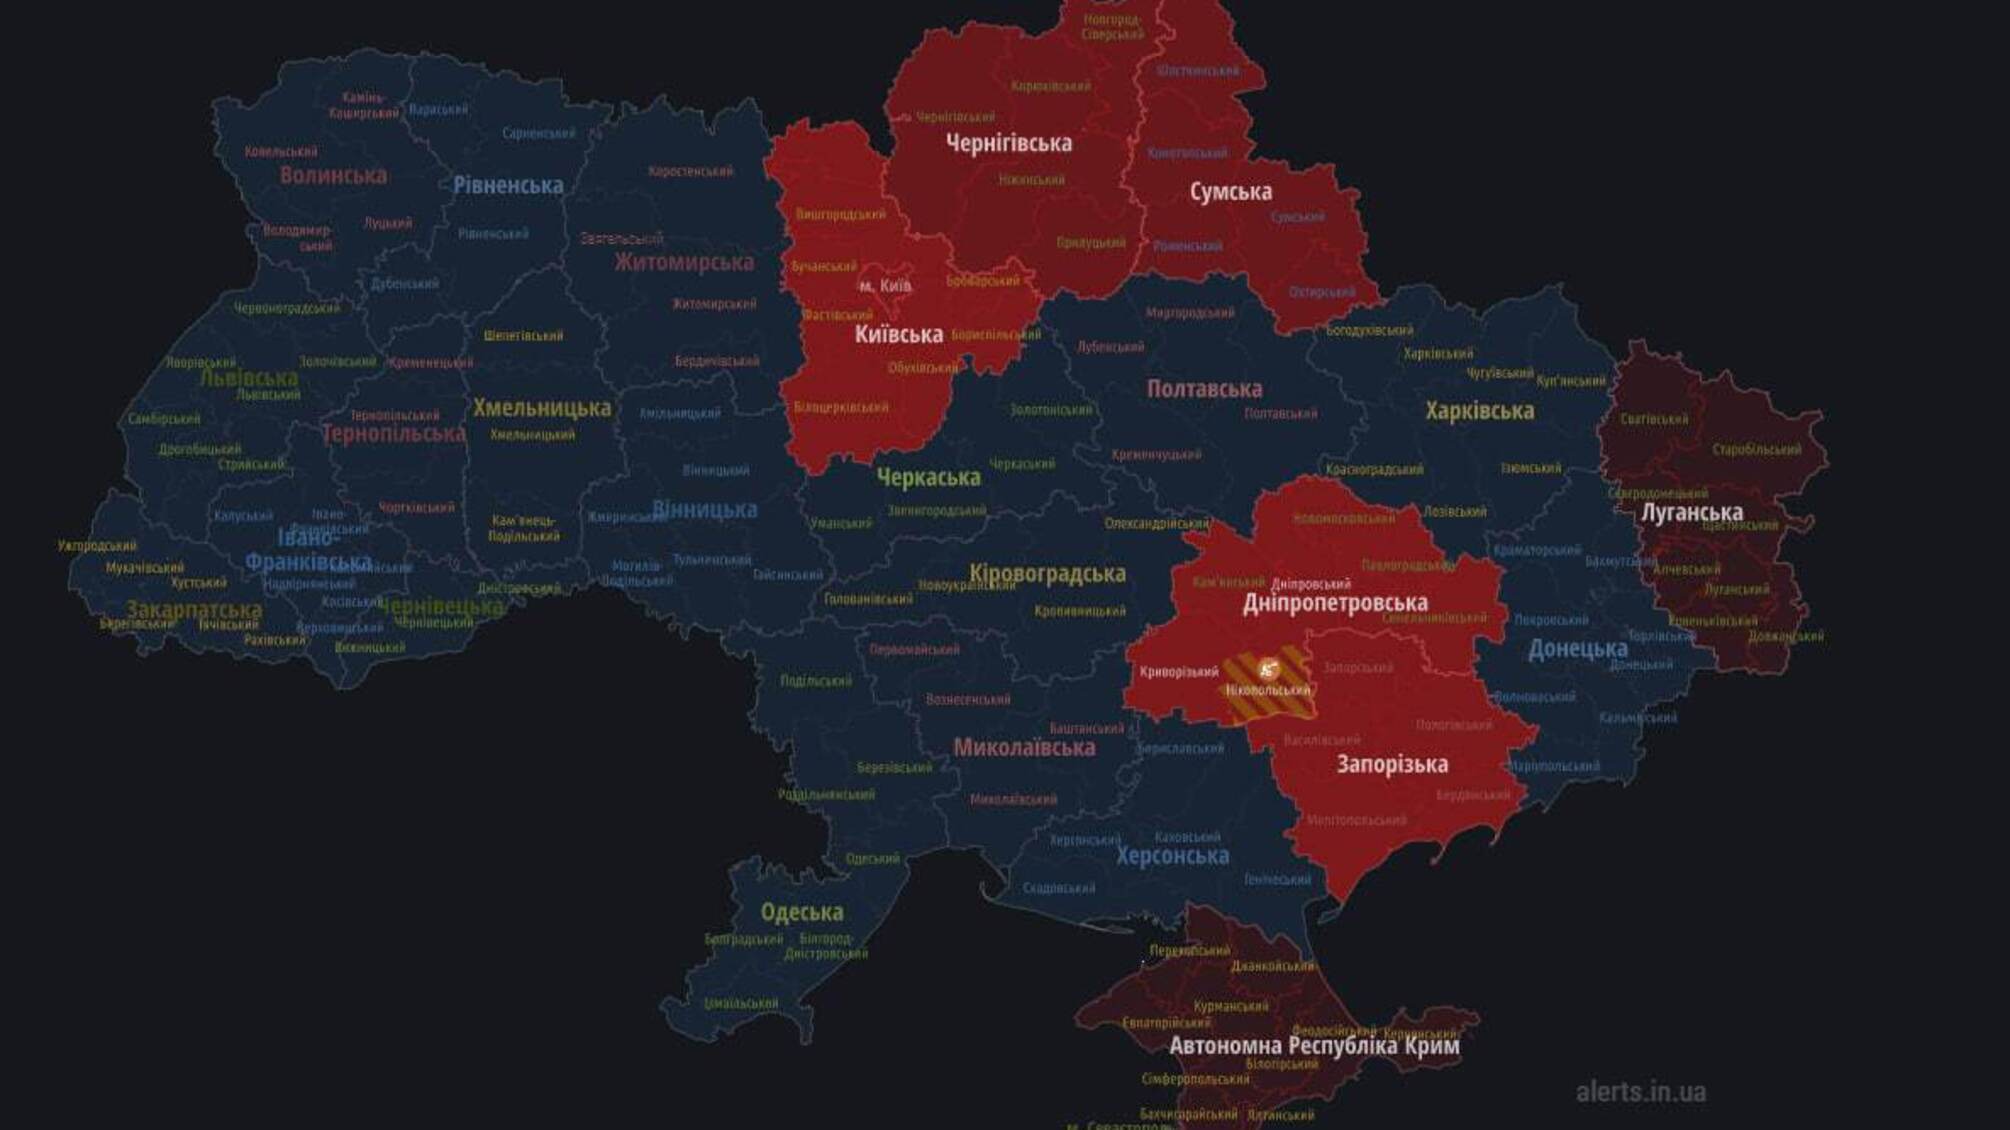 Воздушная тревога в нескольких областях Украины